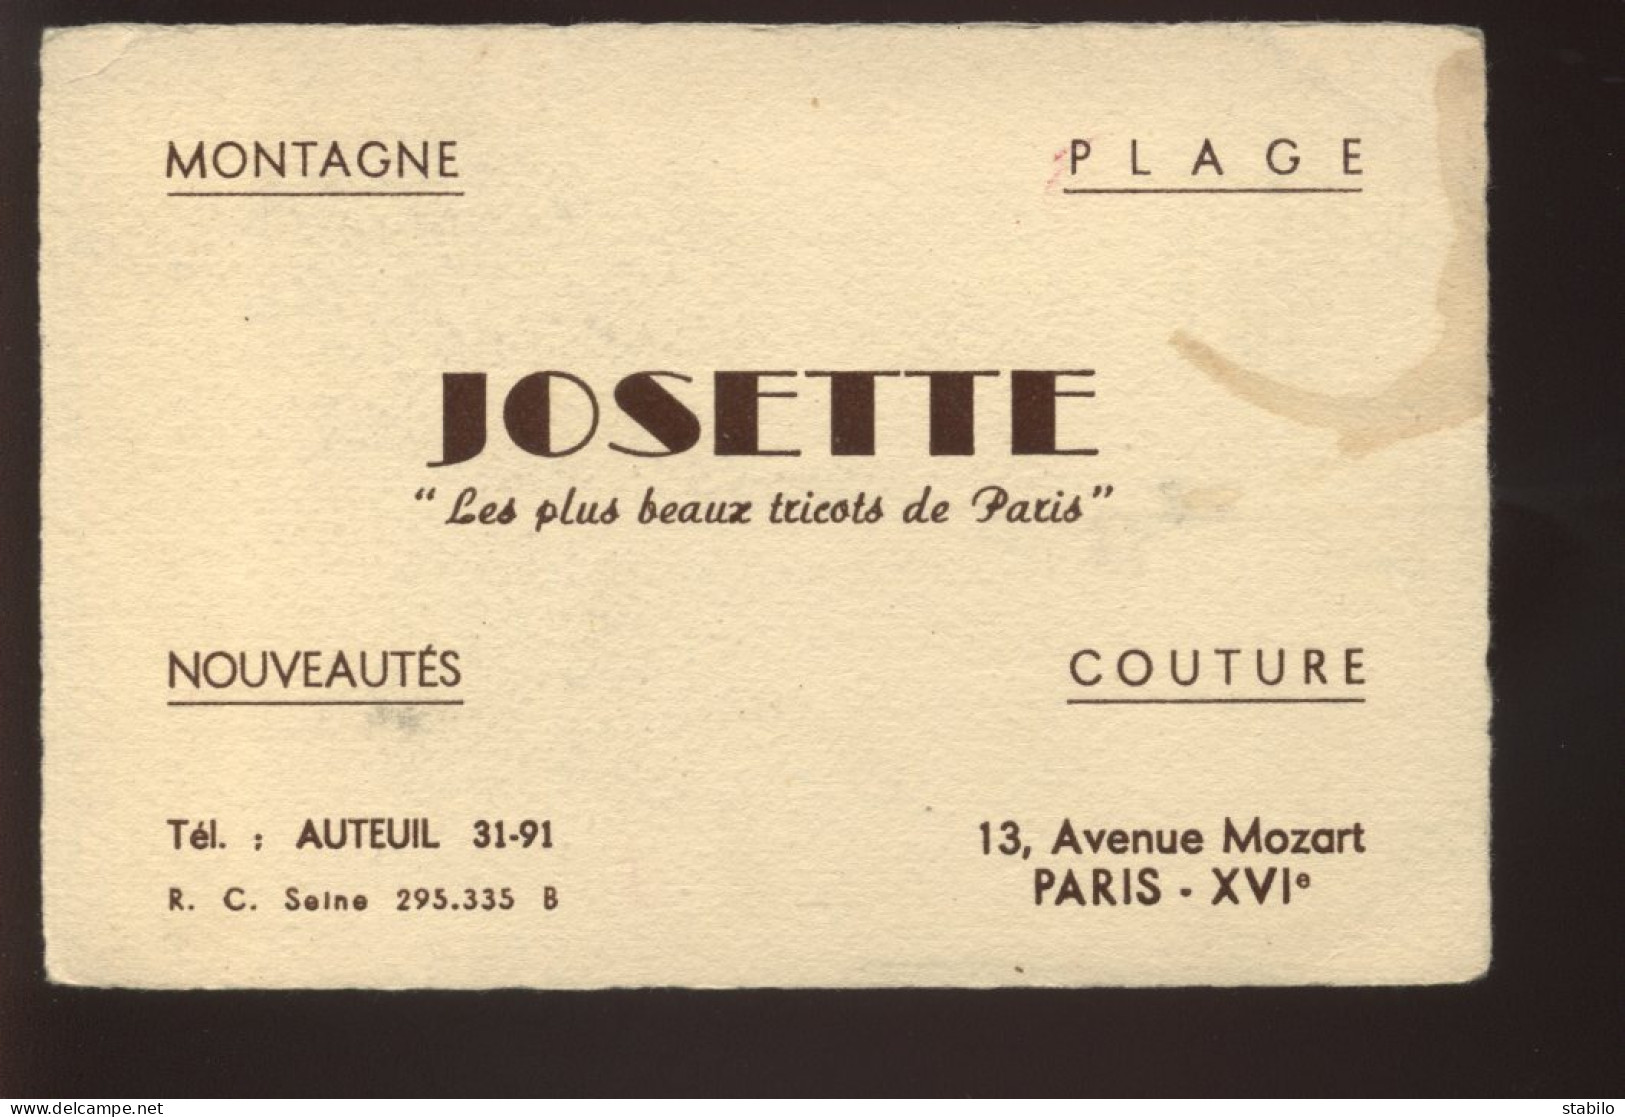 CARTES DE VISITE - PARIS 16EME - "JOSETTE" TRICOTS, 13 AVENUE MOZART - Visiting Cards